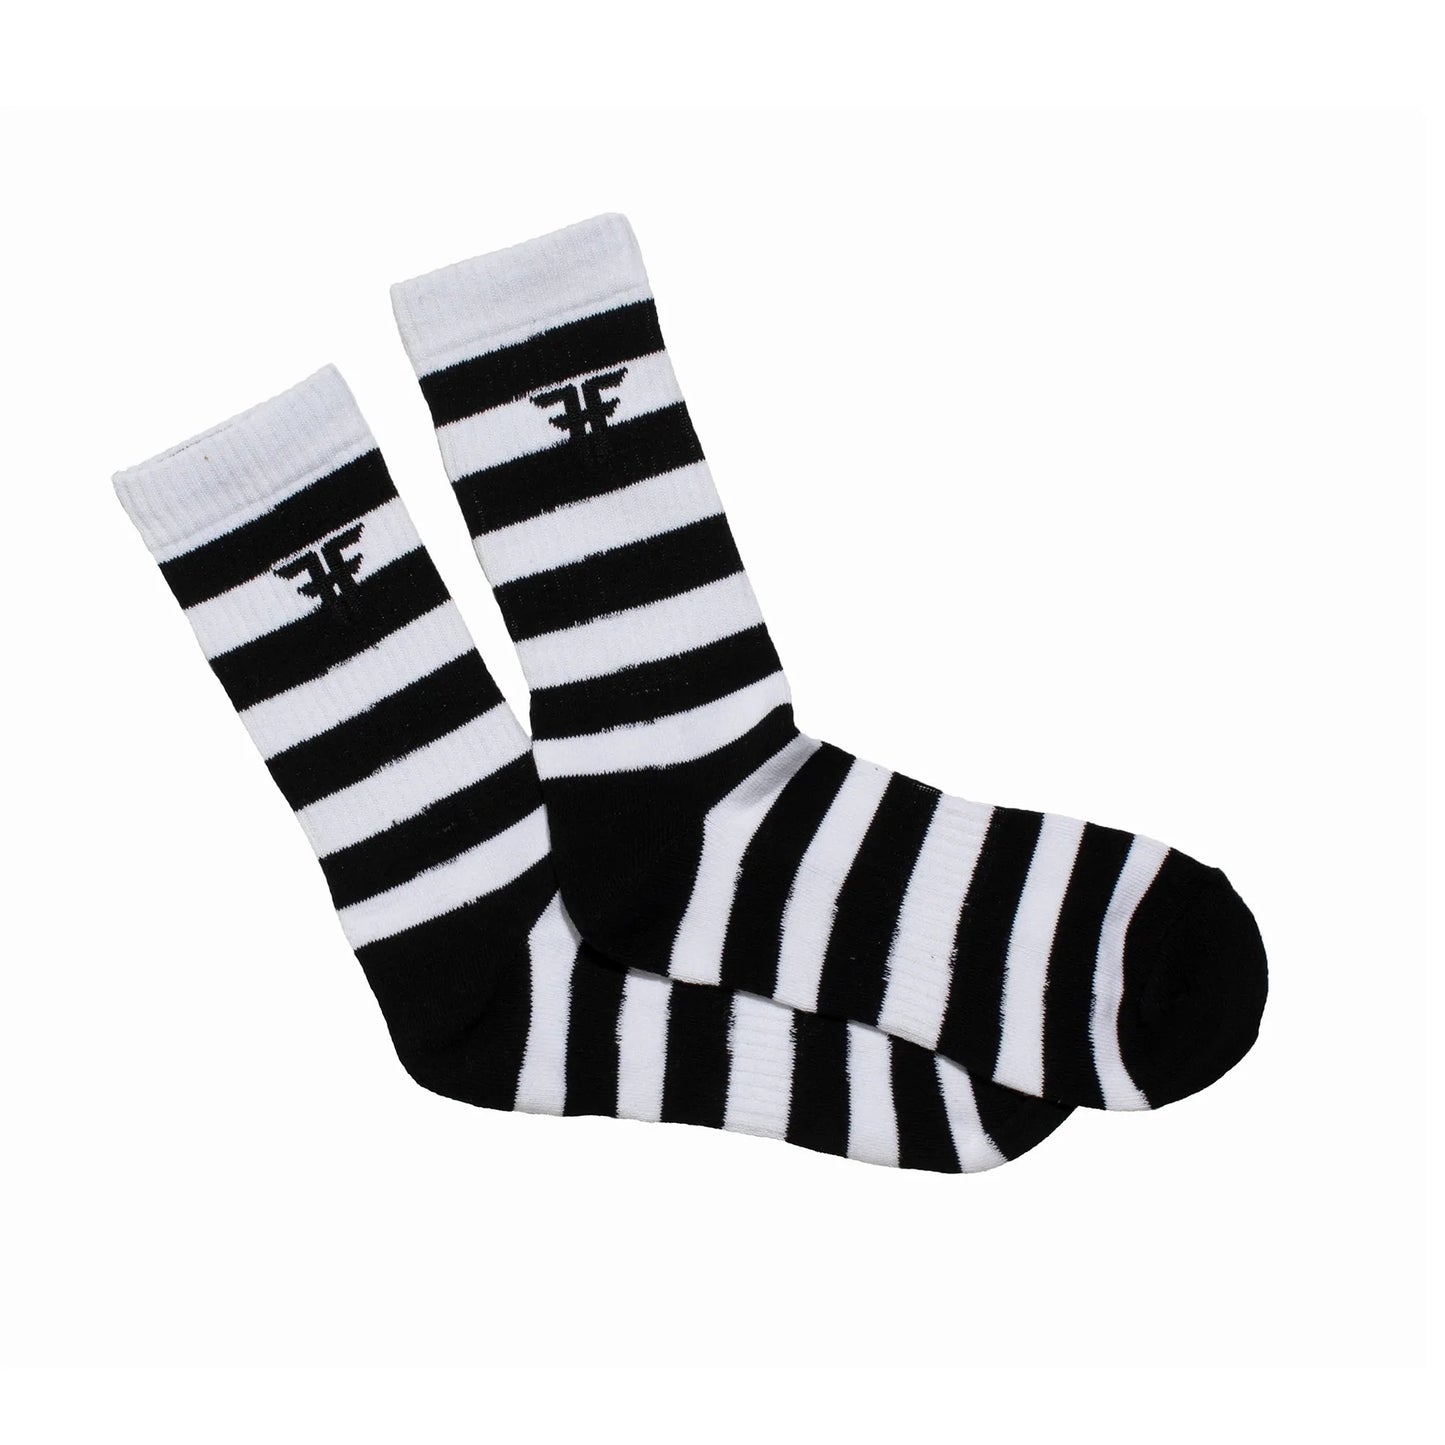 Fallen - Trademark Striped Socks